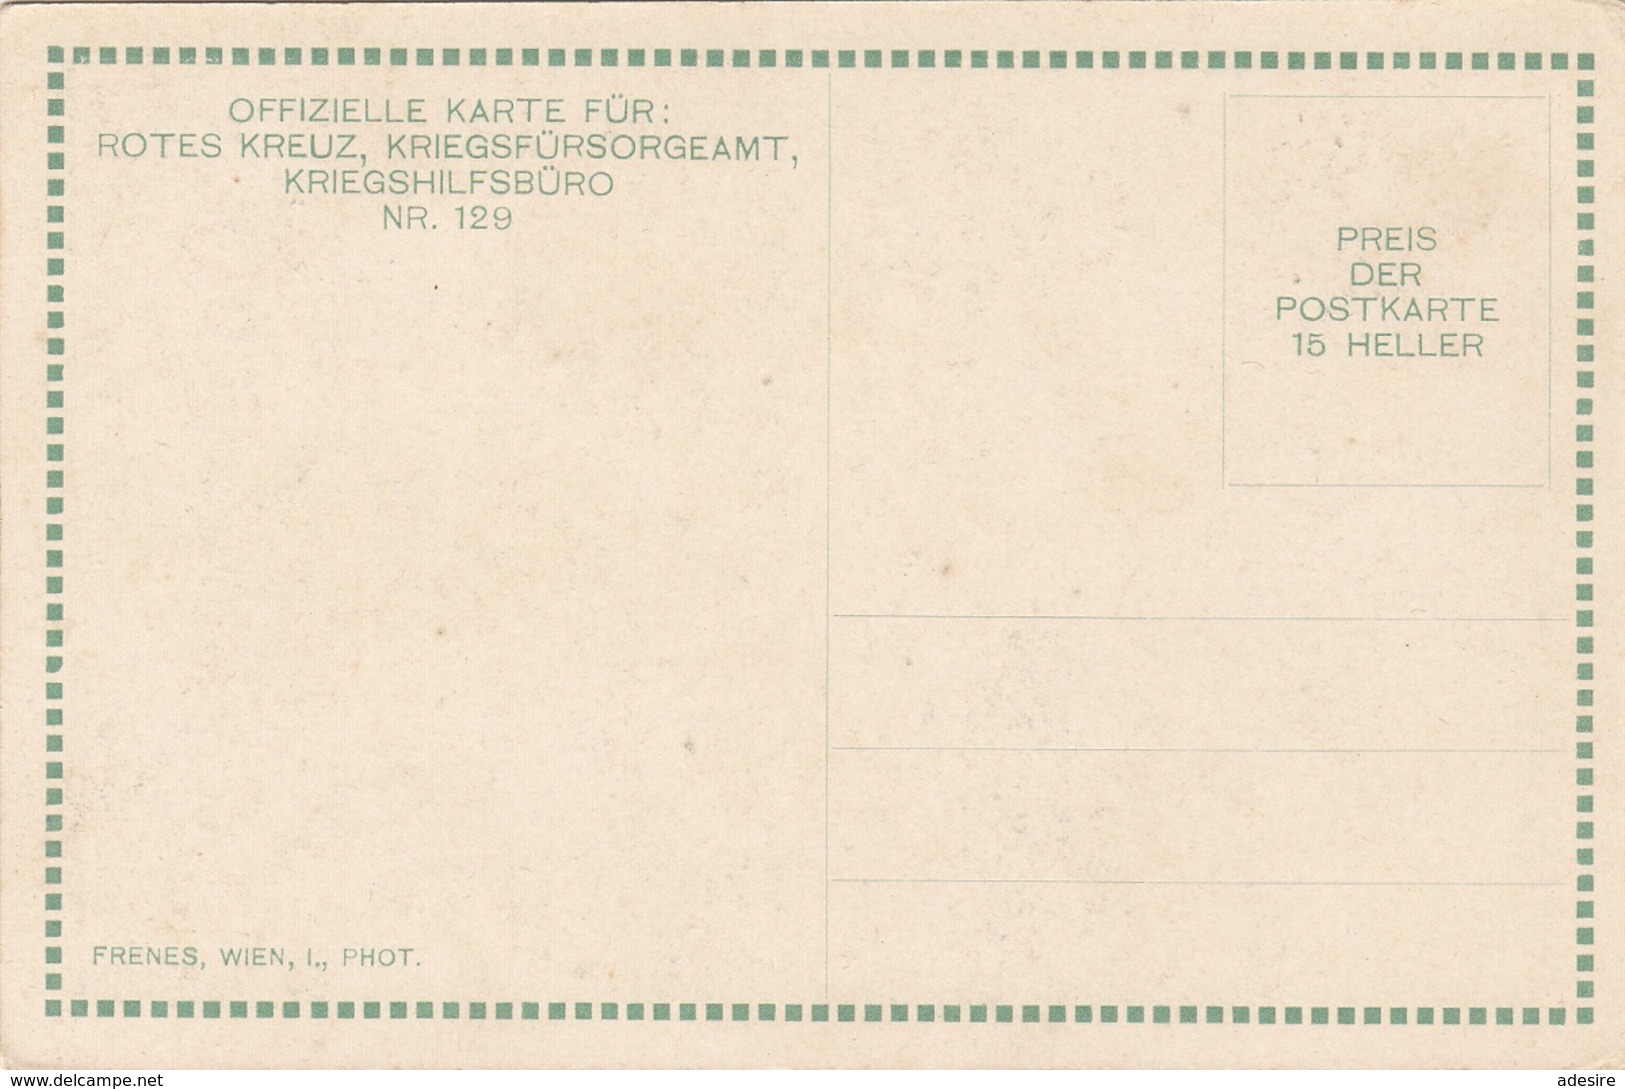 TIROLER KERNGESTALTEN - ROTES KREUZ KARTE NR.120 - Karte Um 1917, Gute Erhaltung - Croix-Rouge